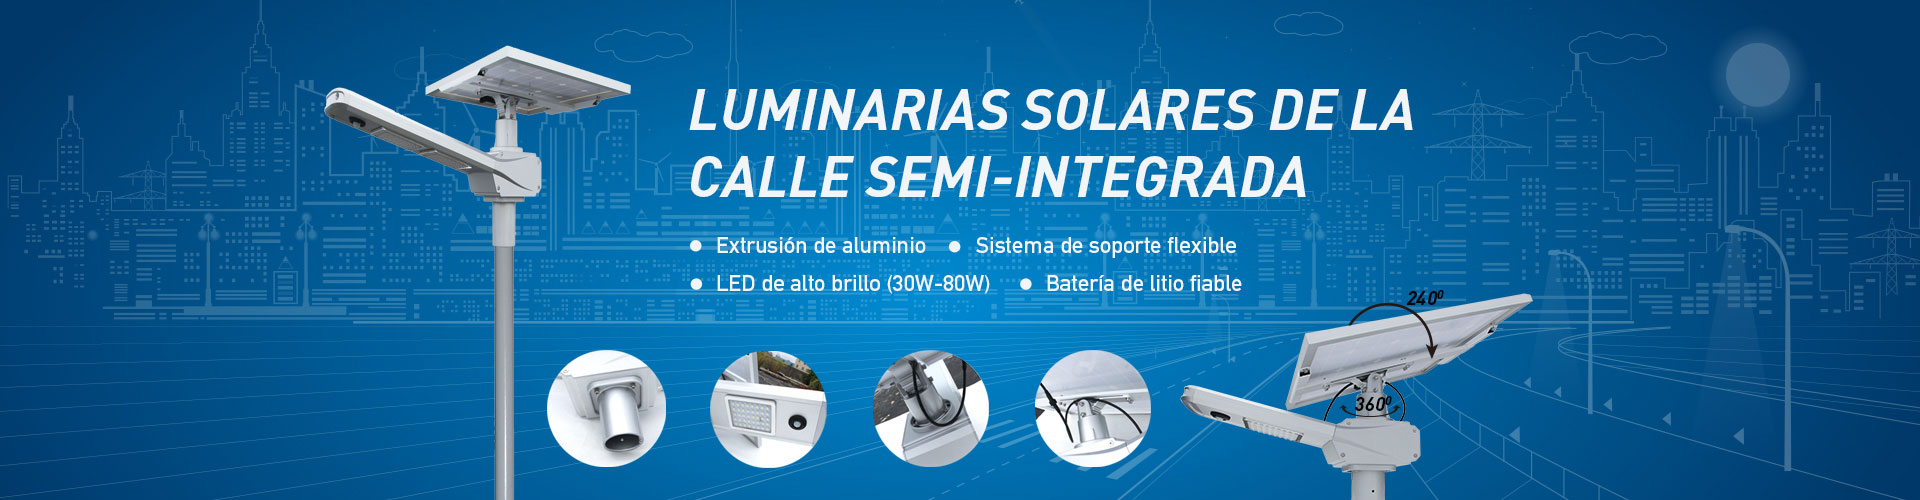 Luminarias Solares de la calle semi-integrado